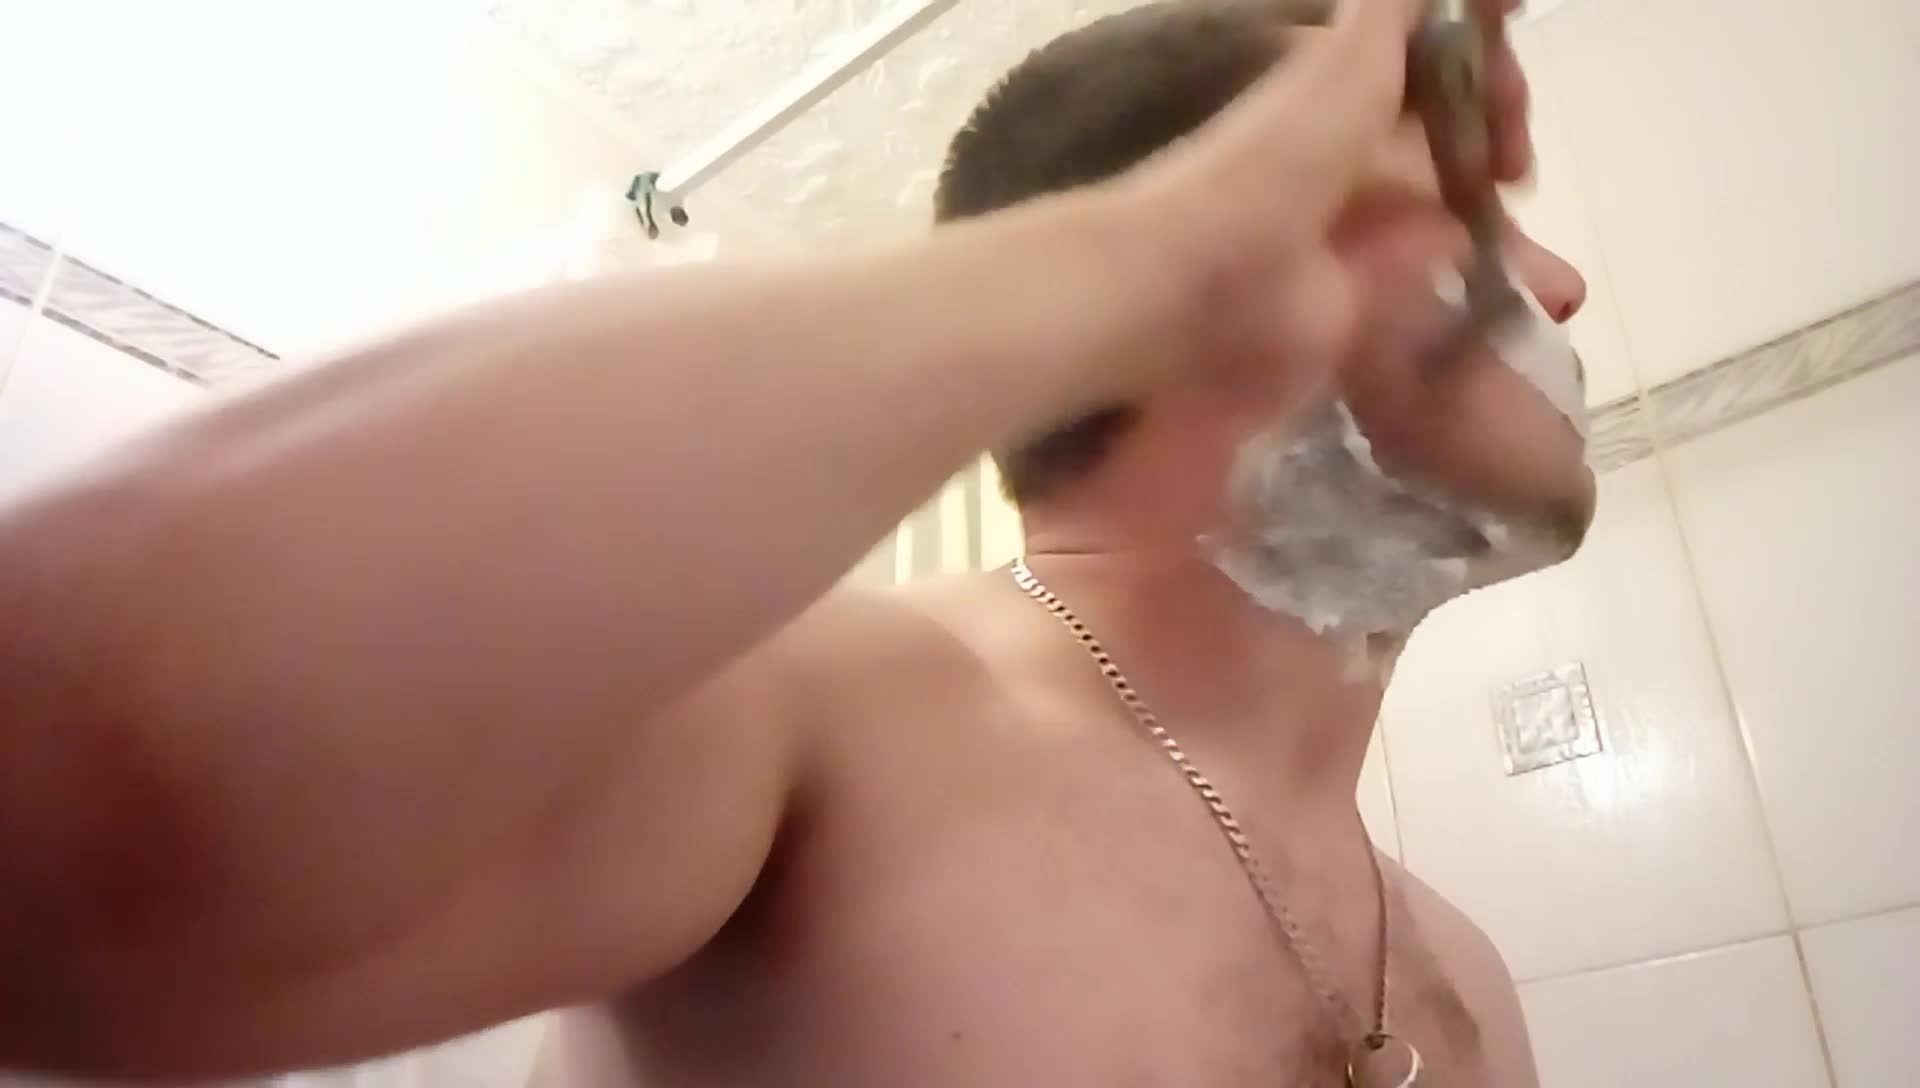 Alex shaving his beard and hairy armpits